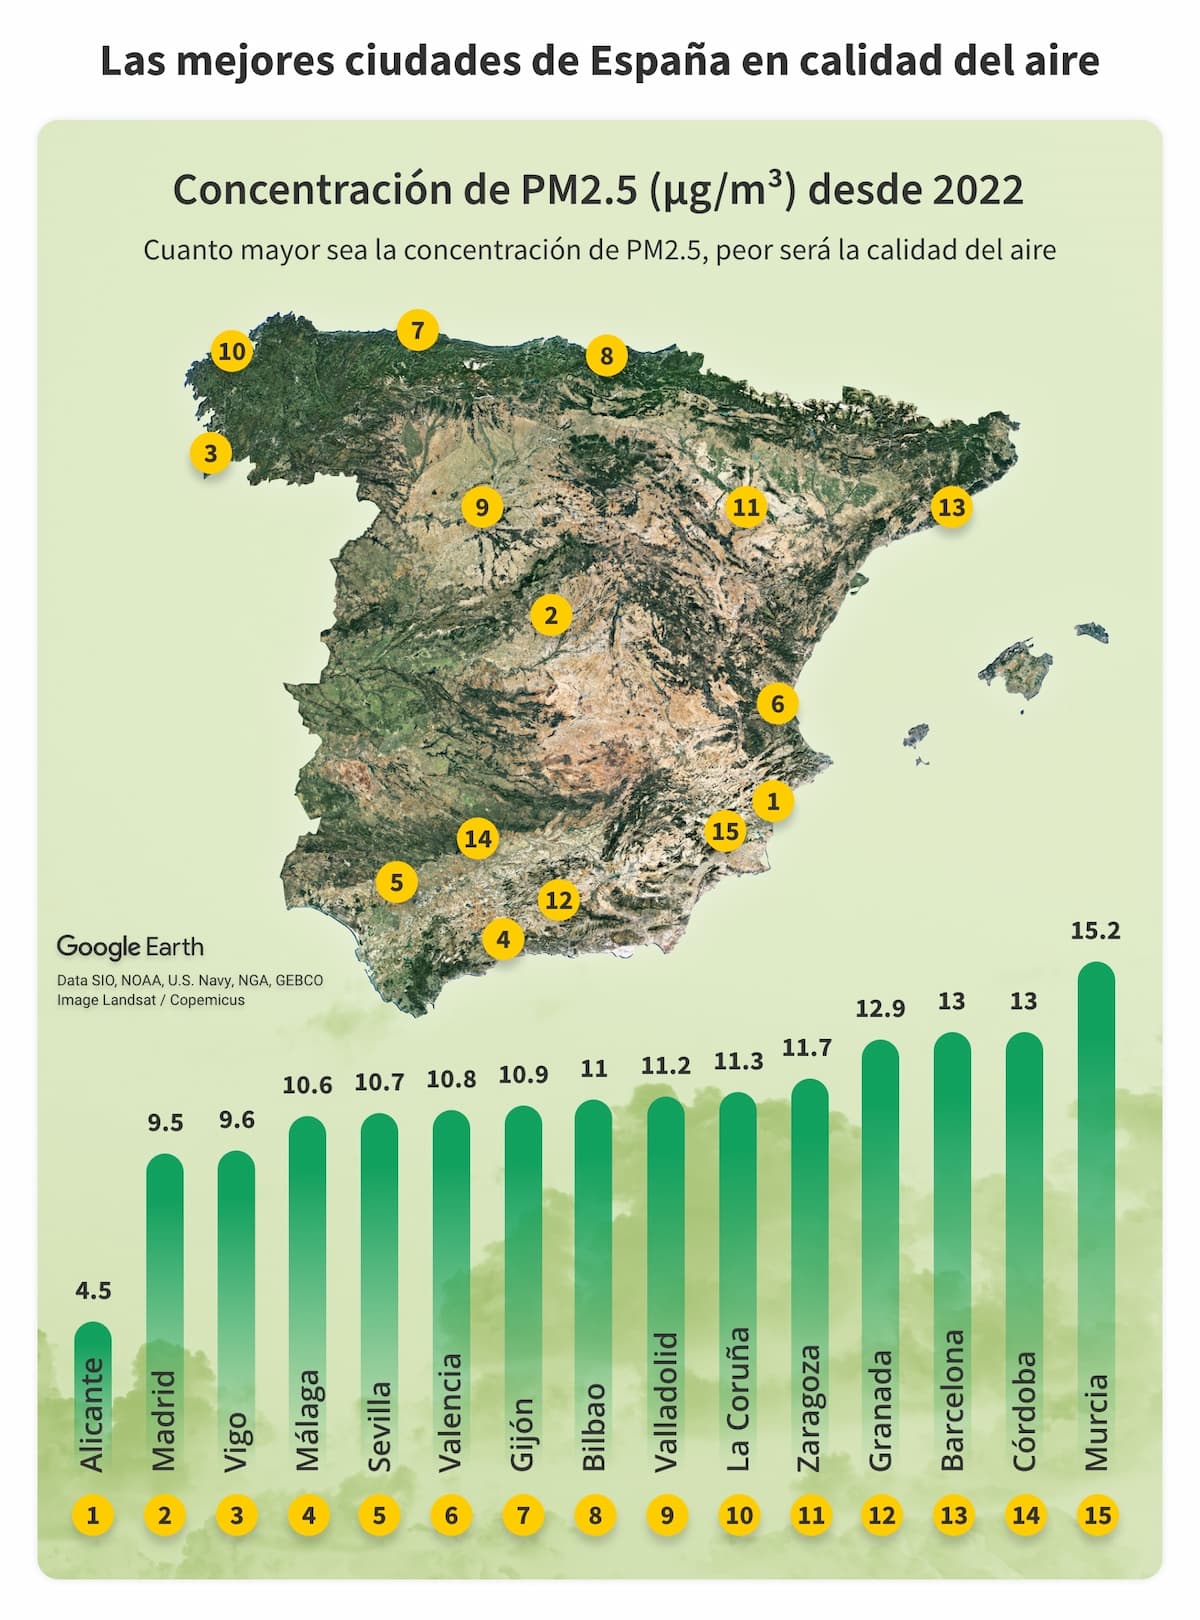 Las mejores ciudades Espana por calidad del aire - Las ciudades más verdes de España